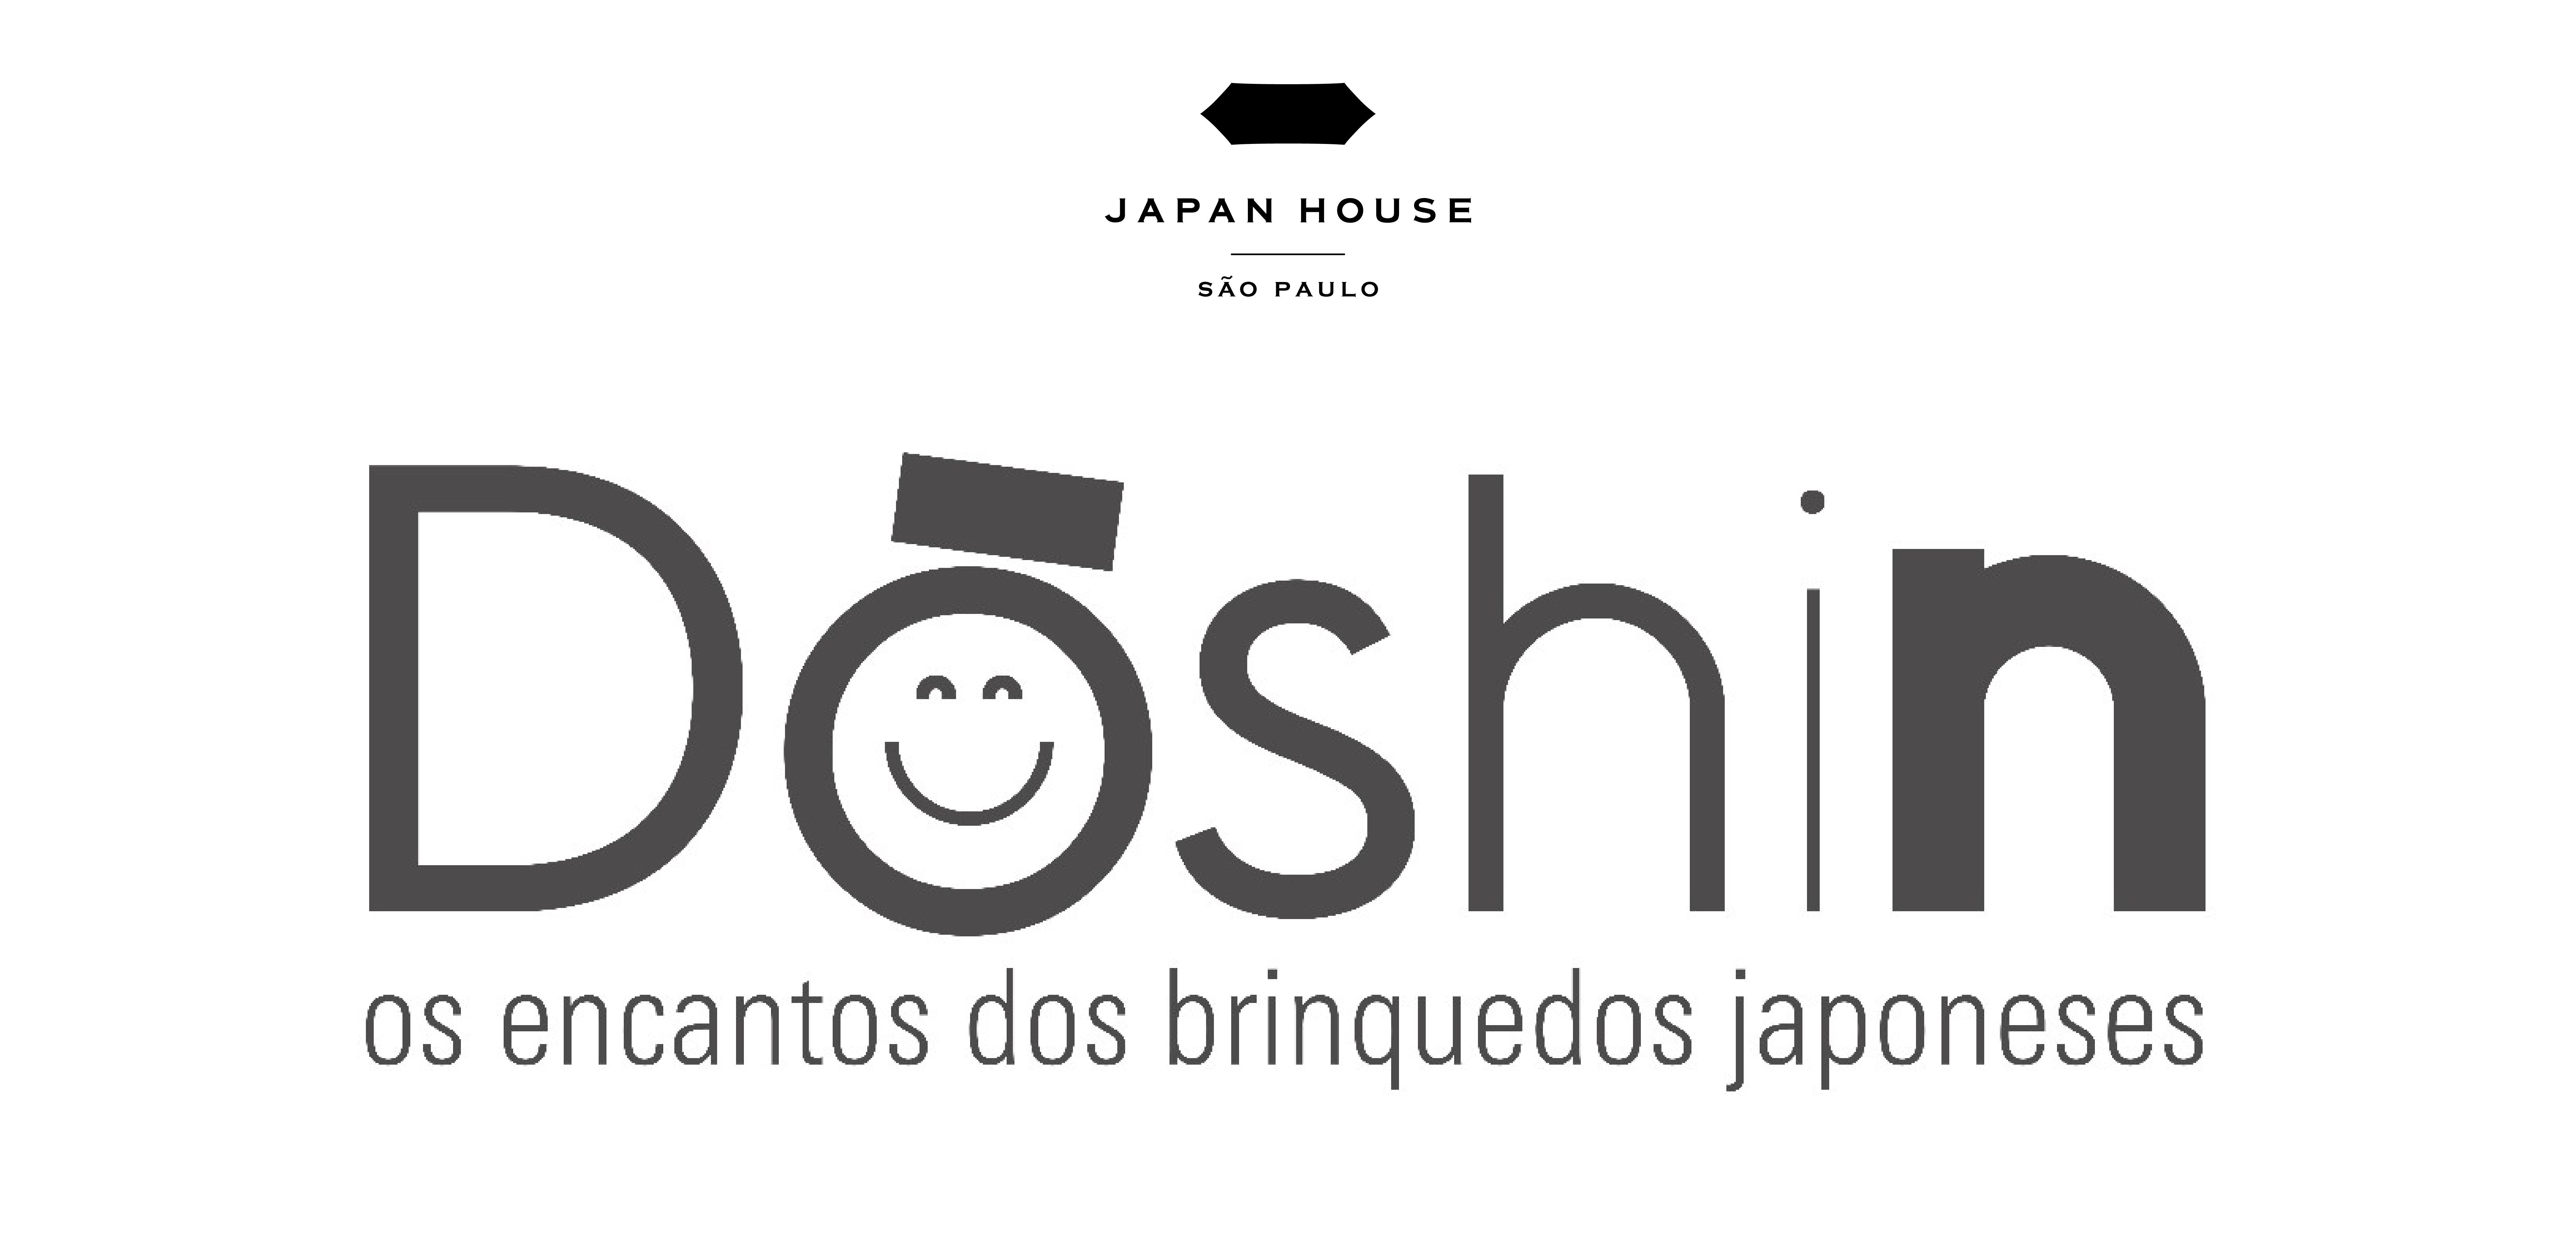 Sobre fundo branco, o título da exposição Dōshin – os encantos dos brinquedos japoneses, escrito com letras pretas, em duas linhas. A palavra Doshin, que remete a coração infantil, está em negrito em diferentes espessuras, e tem a letra O com olhos e boca sorridentes. Na parte superior da imagem, logotipo da Japan House São Paulo.